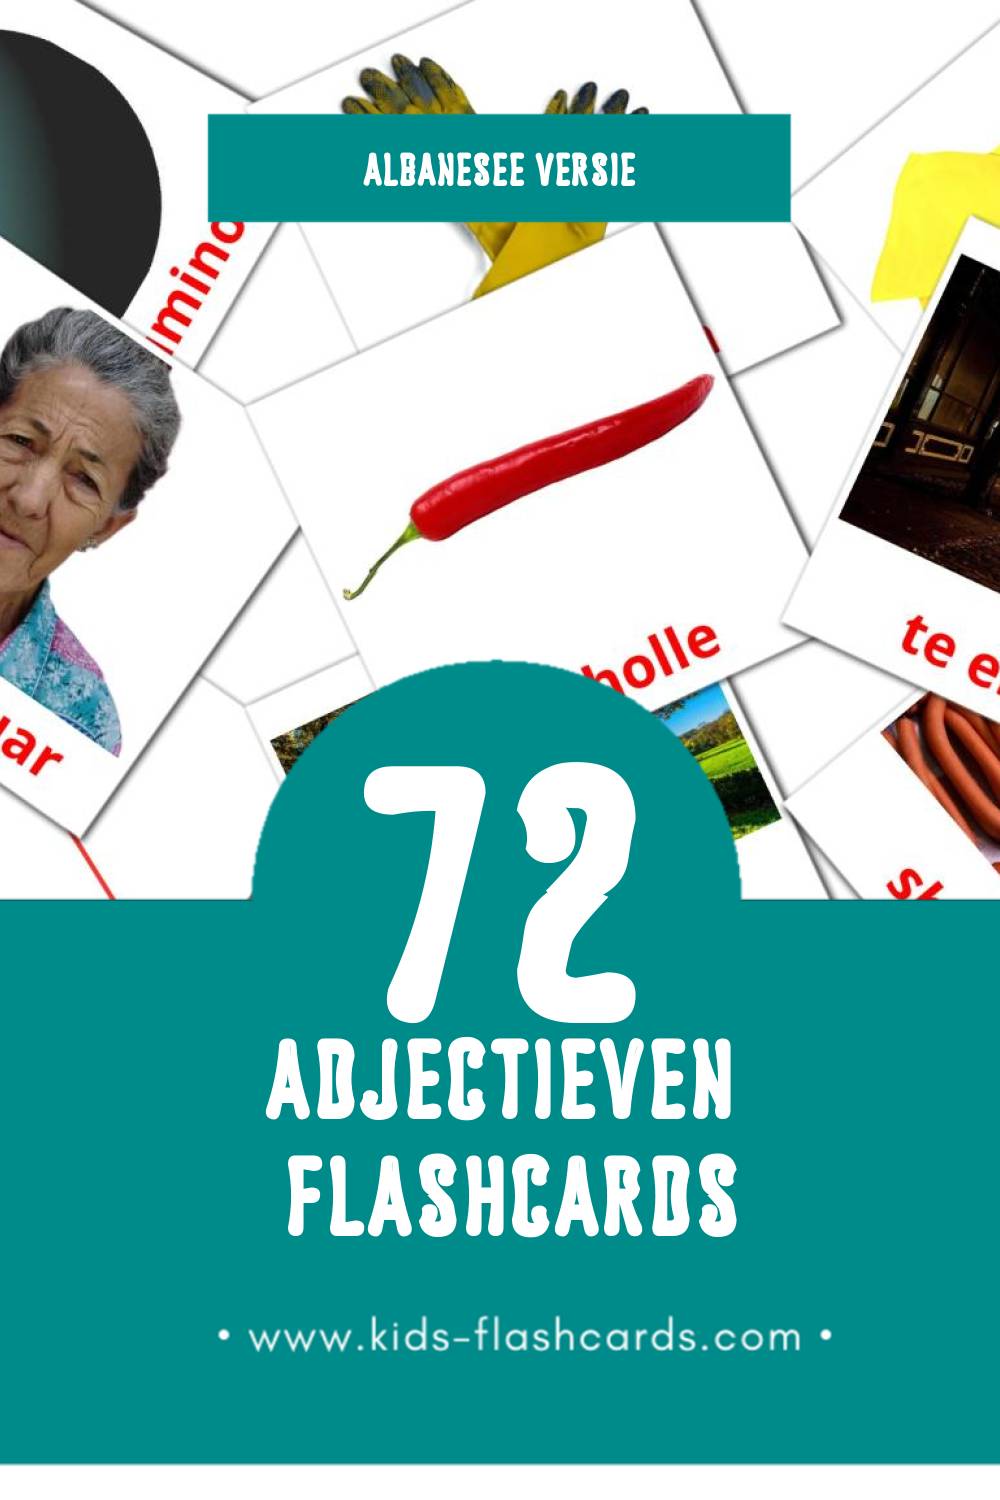 Visuele Te kundertat Flashcards voor Kleuters (72 kaarten in het Albanese)